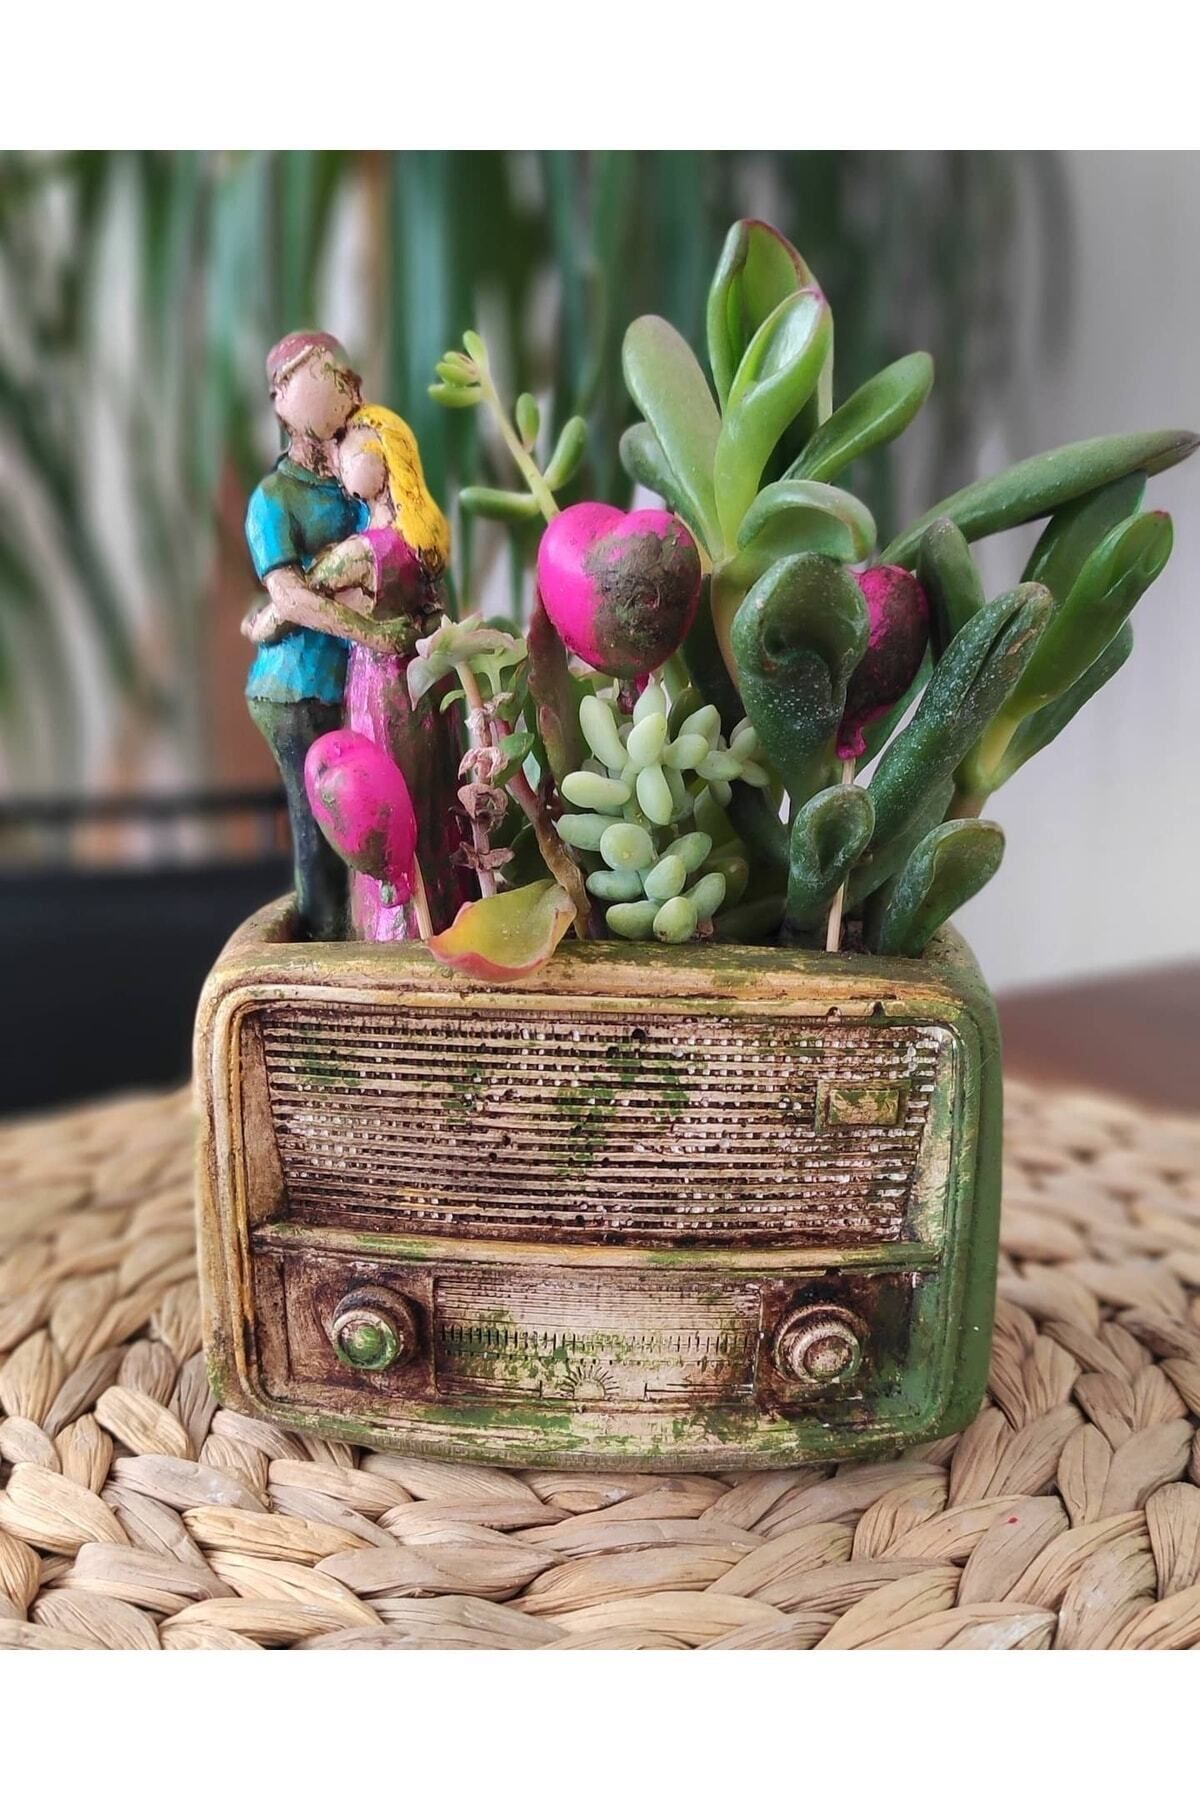 Lina Art hediyelik Eskitme Nostalji Radyo Saksı Mini Boy 14 Cm X 11 Cm ) )